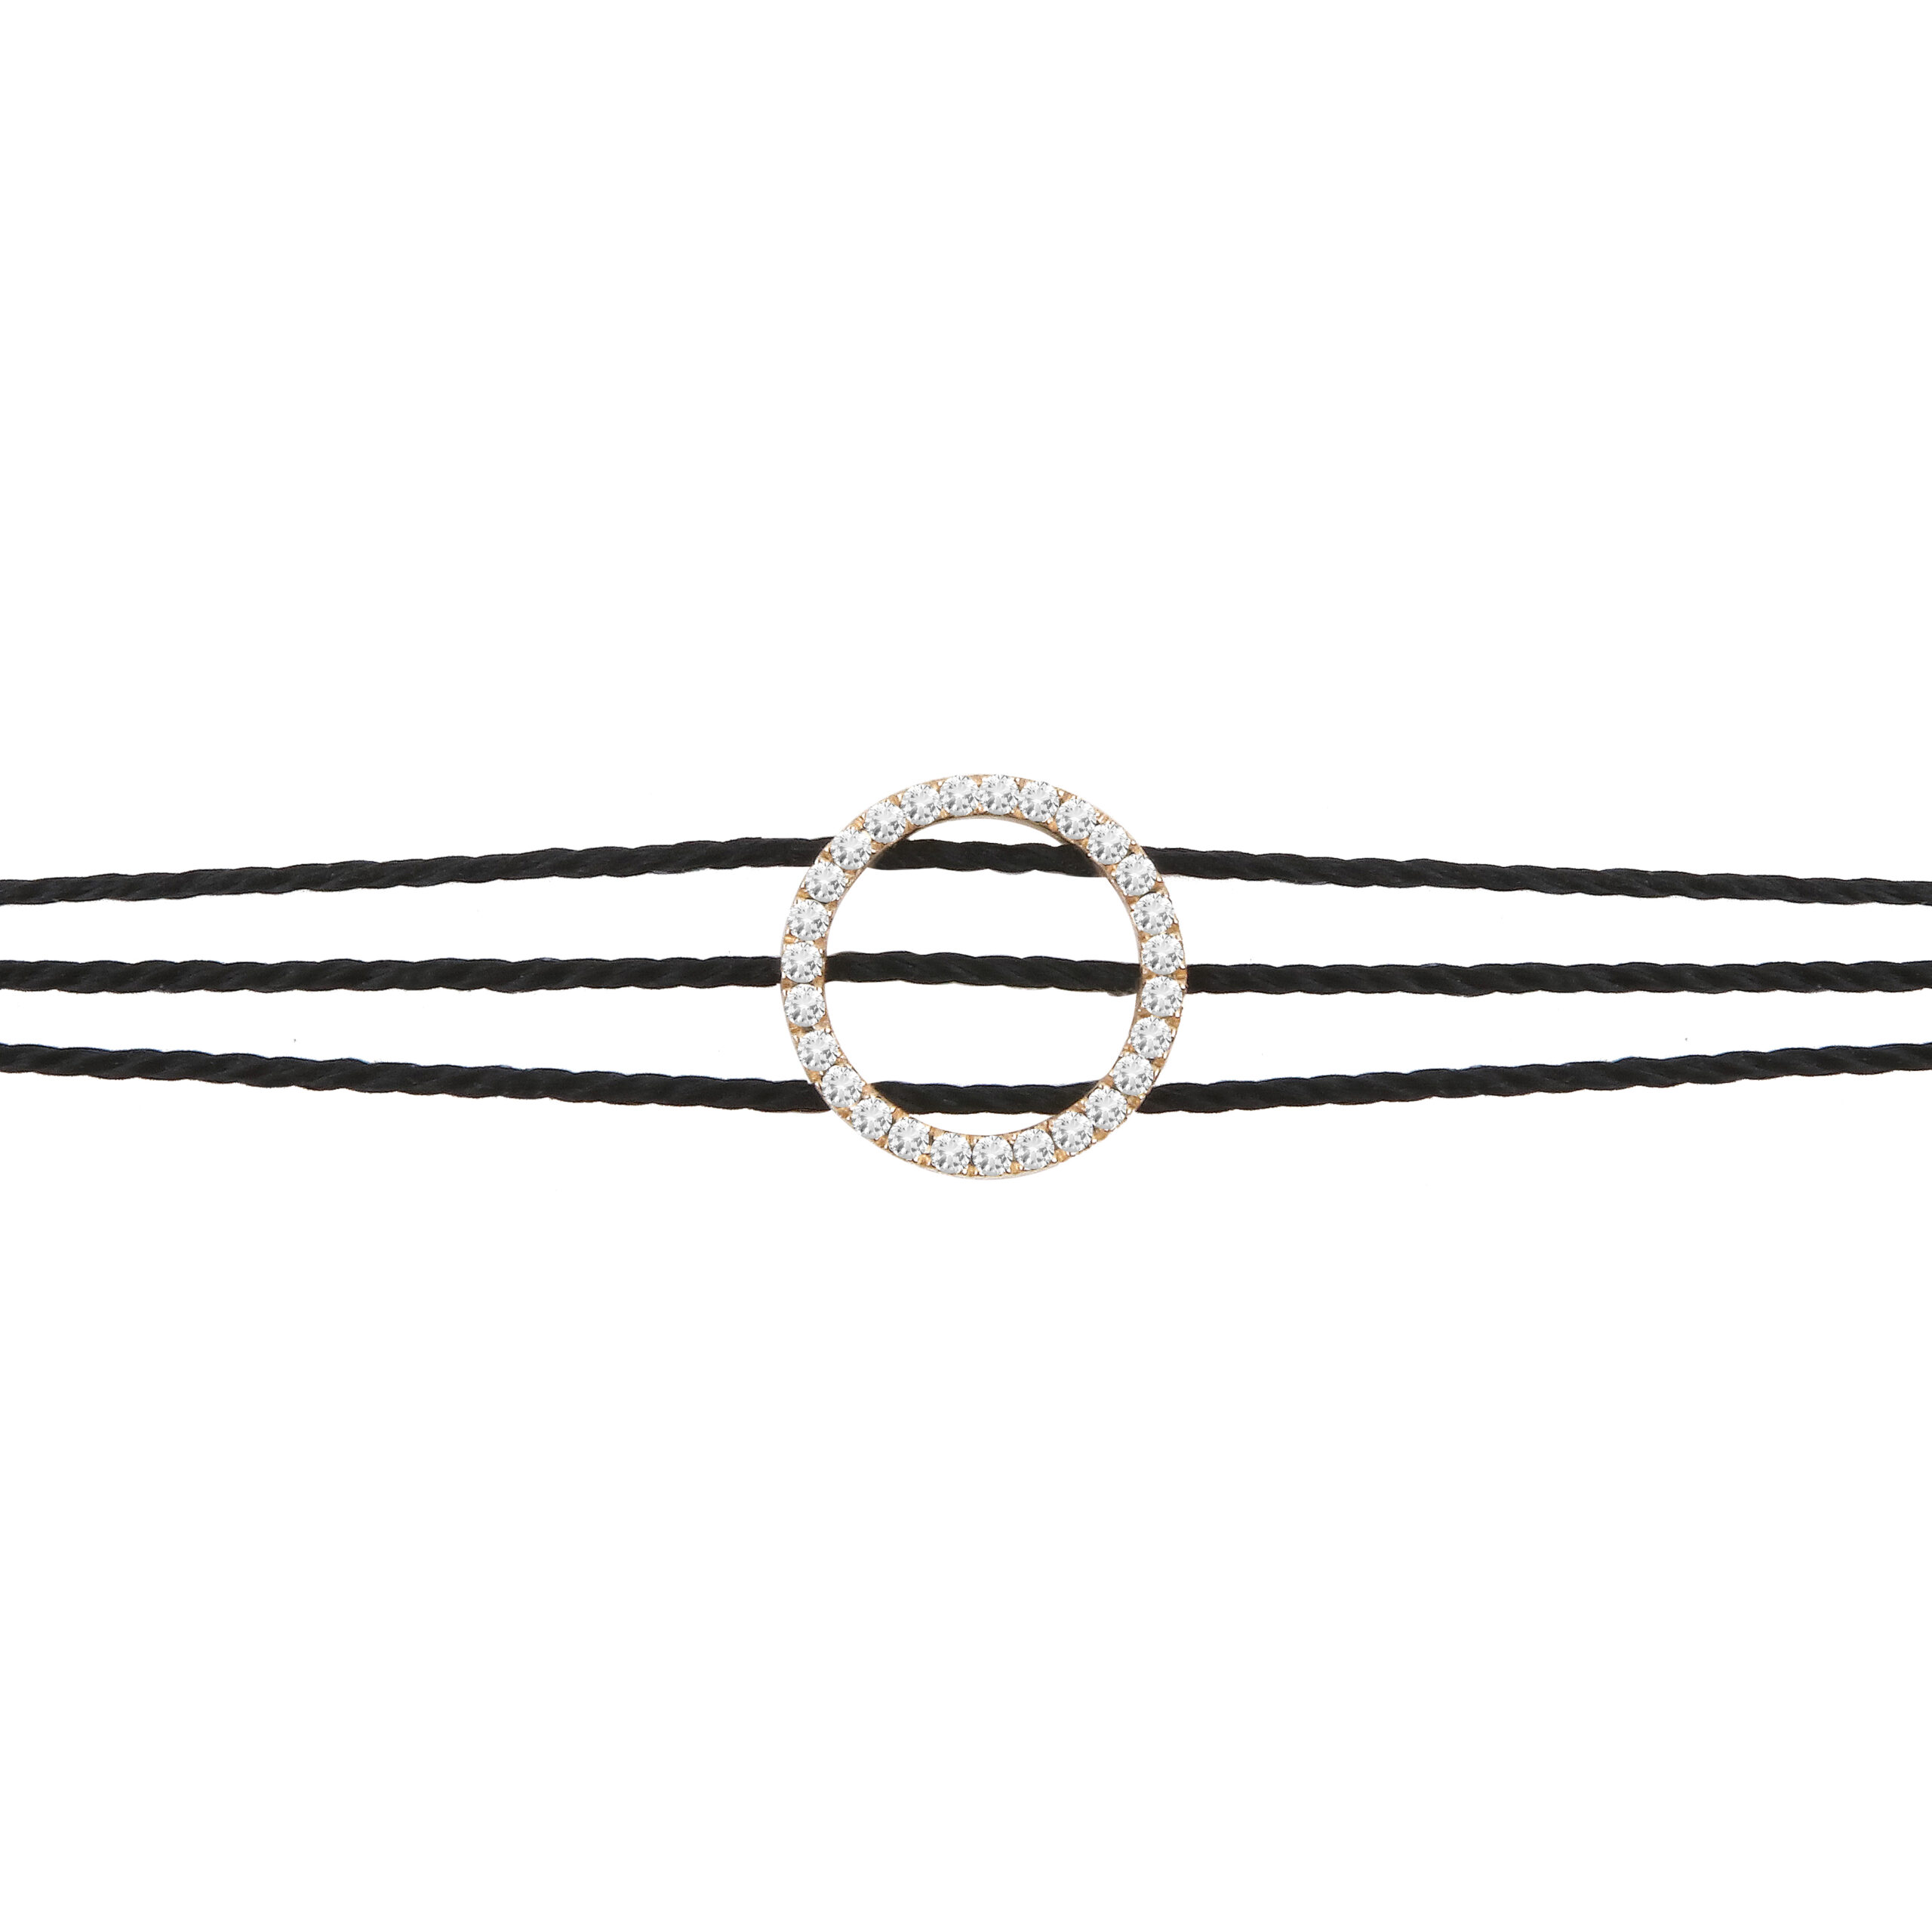 Ce bijou tendance, un bracelet fil cordon noir et diamants pour femme made in France, prisé par les stars et célébrités, est le cadeau idéal et abordable pour célébrer une naissance, un anniversaire, ou une amitié.